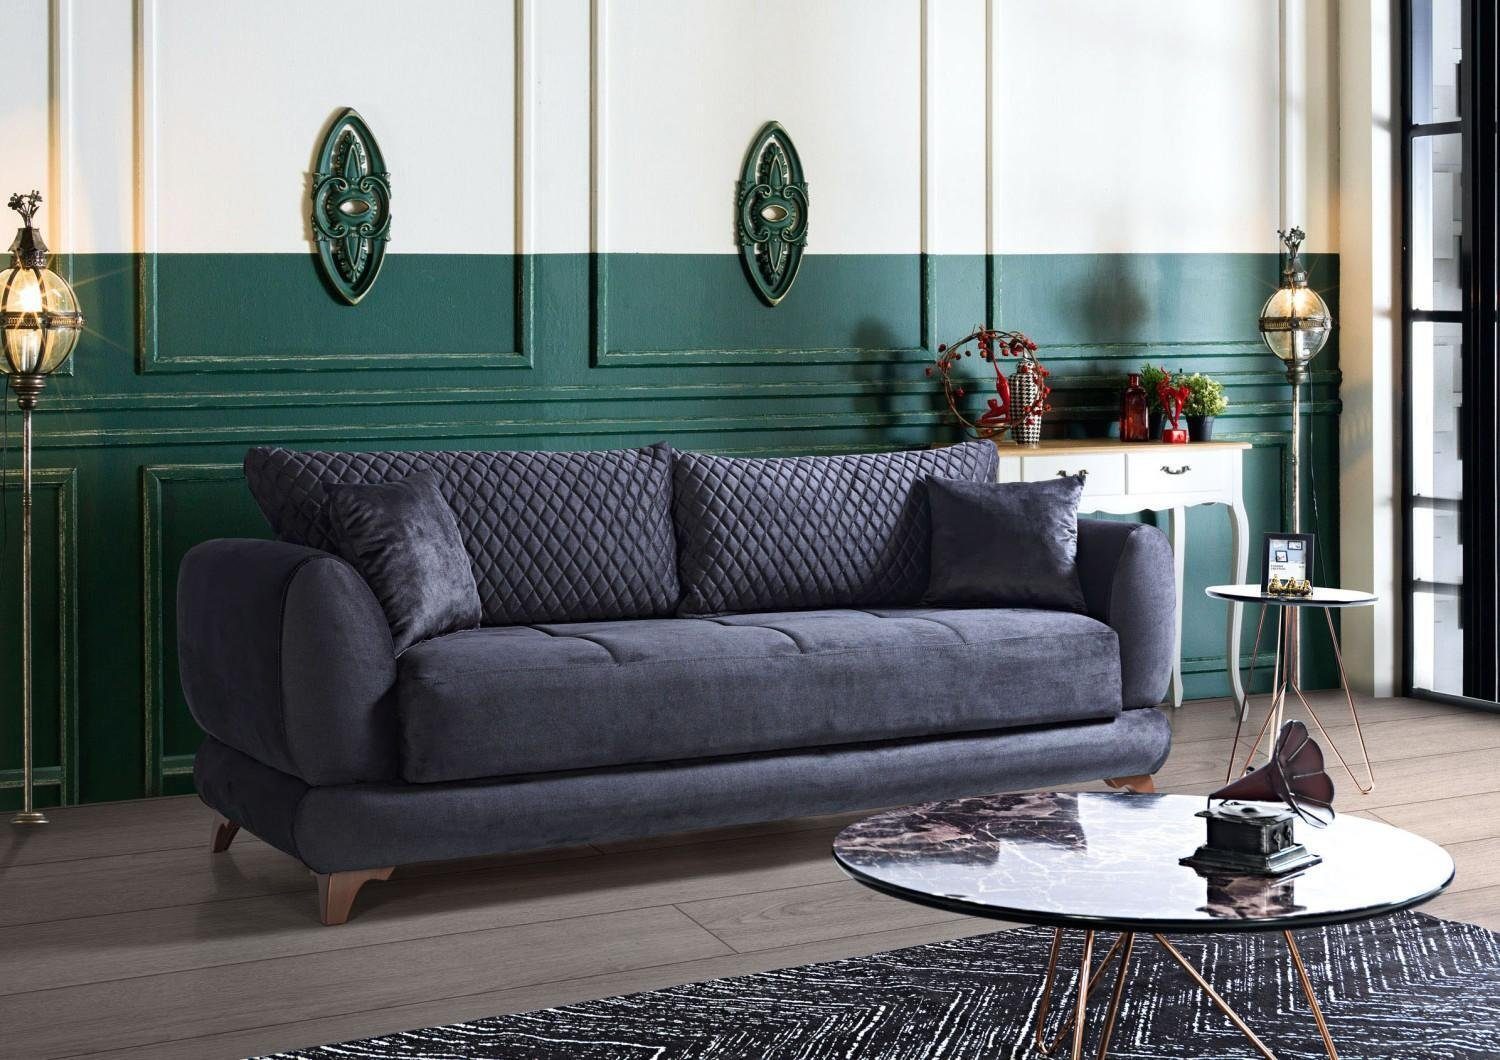 JVmoebel Sofa Dreisitzer Couch mit Made In Schlaffunktion Sofas, Bett Klappcouch Europe Textil Sofa